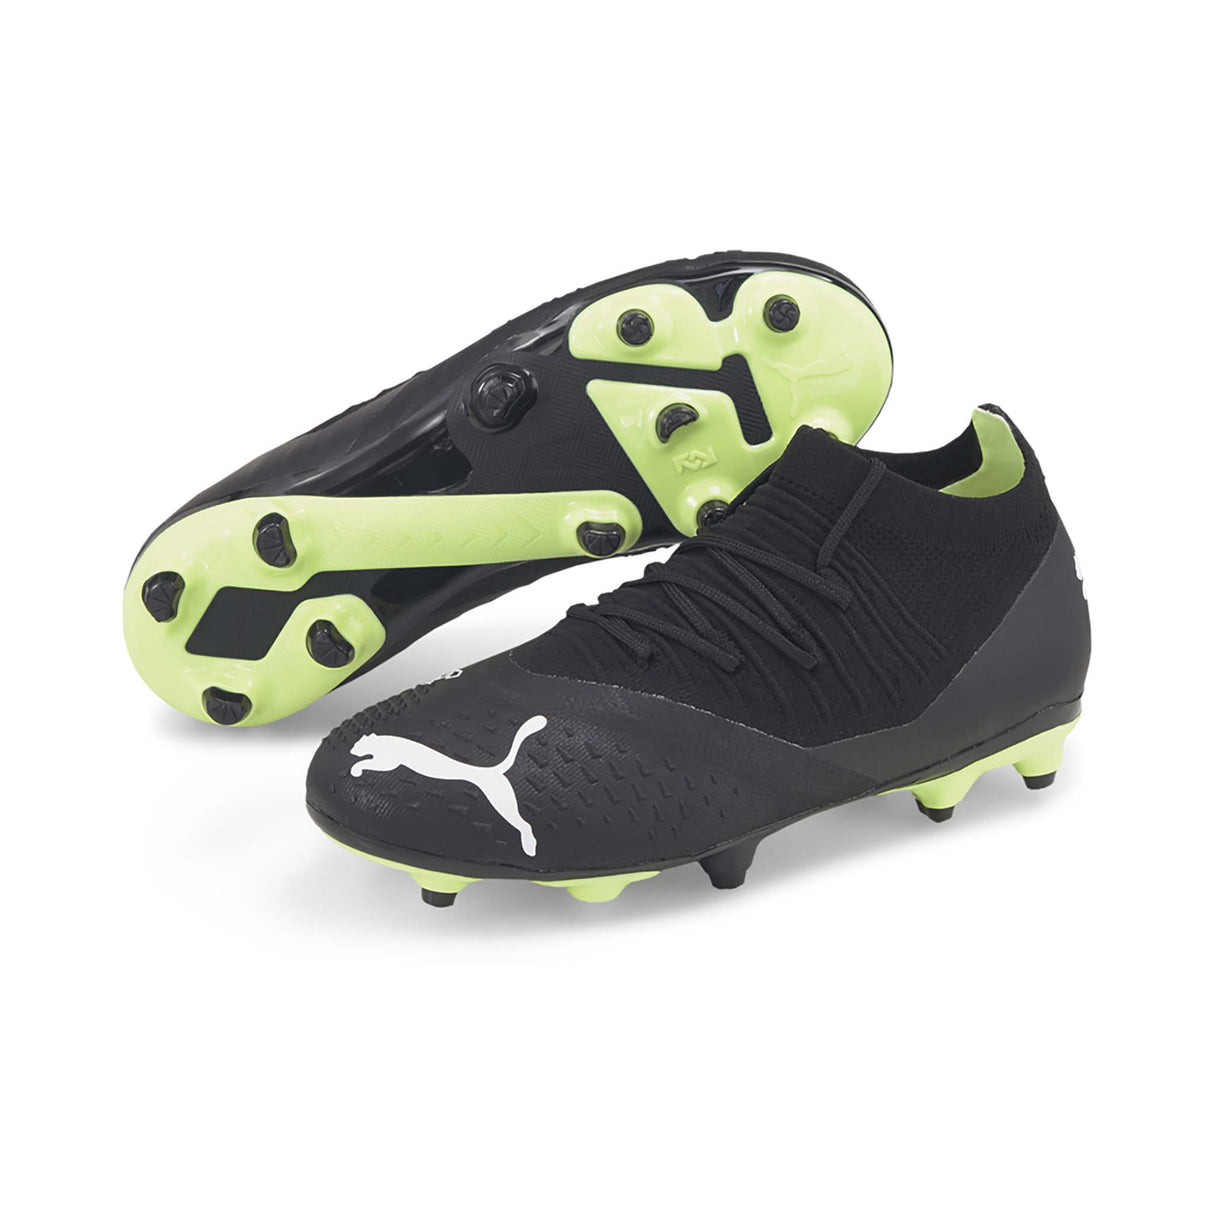 Puma Future Z 3.3 FG/AG souliers de soccer junior black white paire